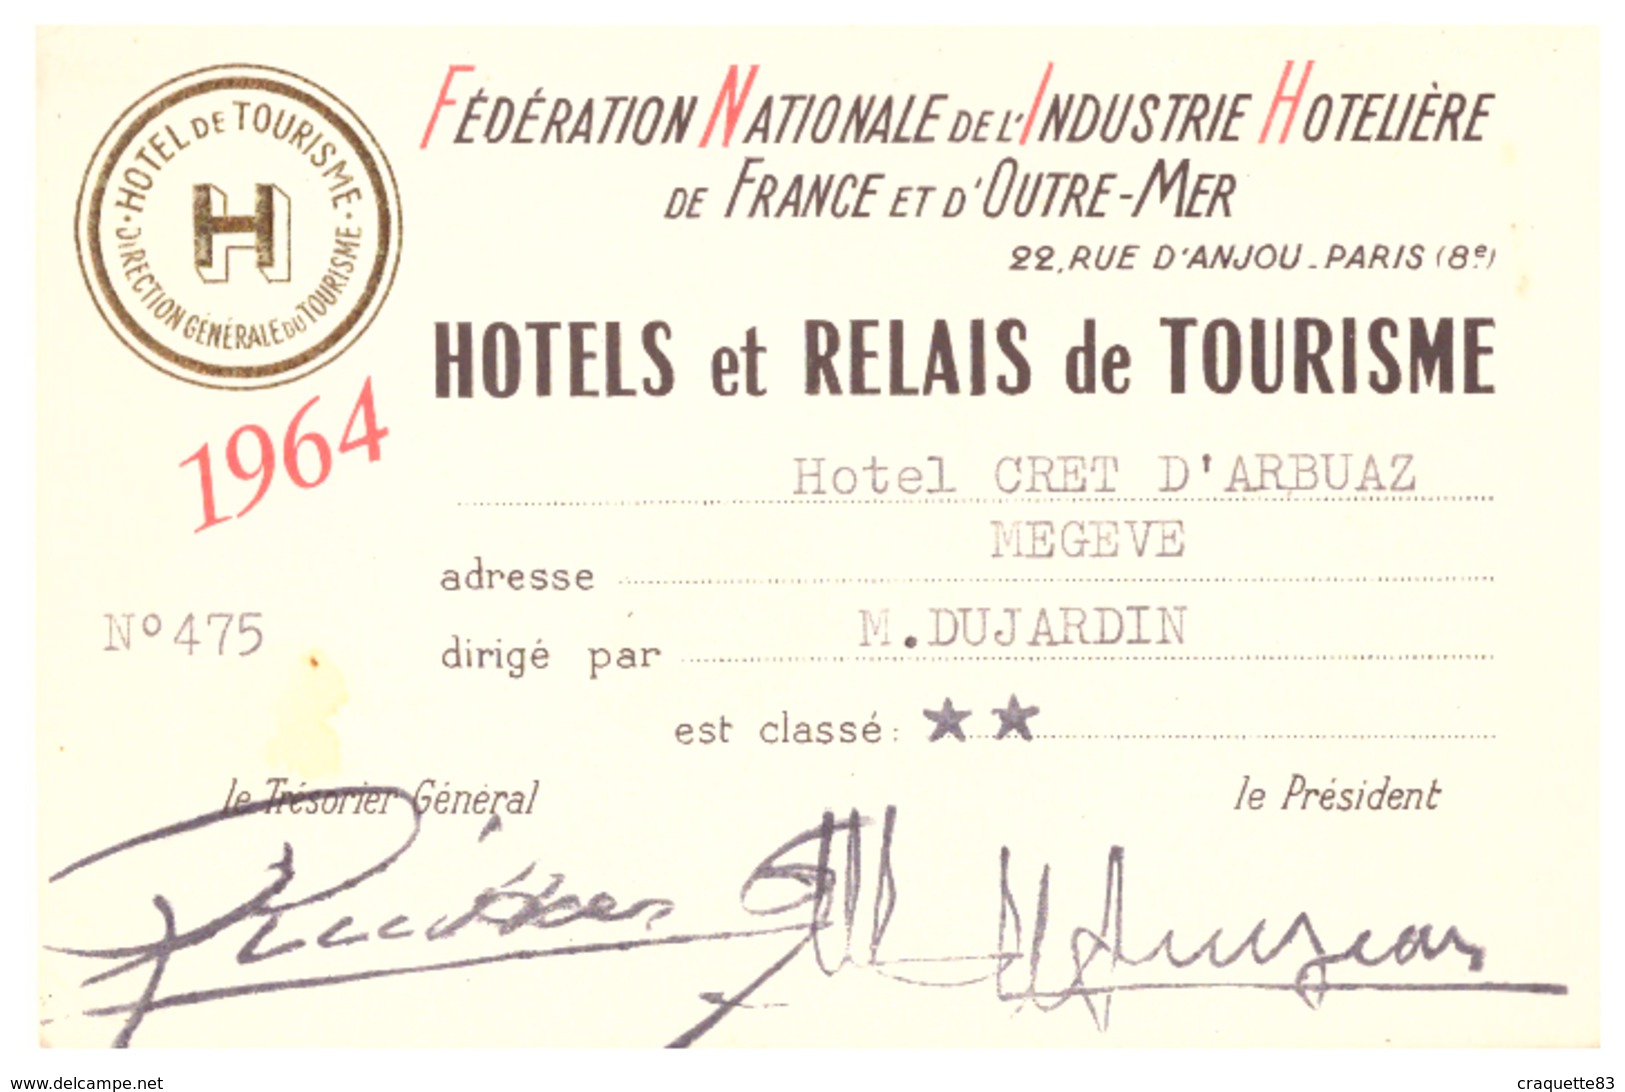 "HOTEL CRET D'ARBUAZ  MEGEVE-  1964- FEDERATION NATIONALE DE L'INDUSTRIE HOTELIERE DE FRANCE ET D'OUTRE-MER  N)475 - Cartes De Visite